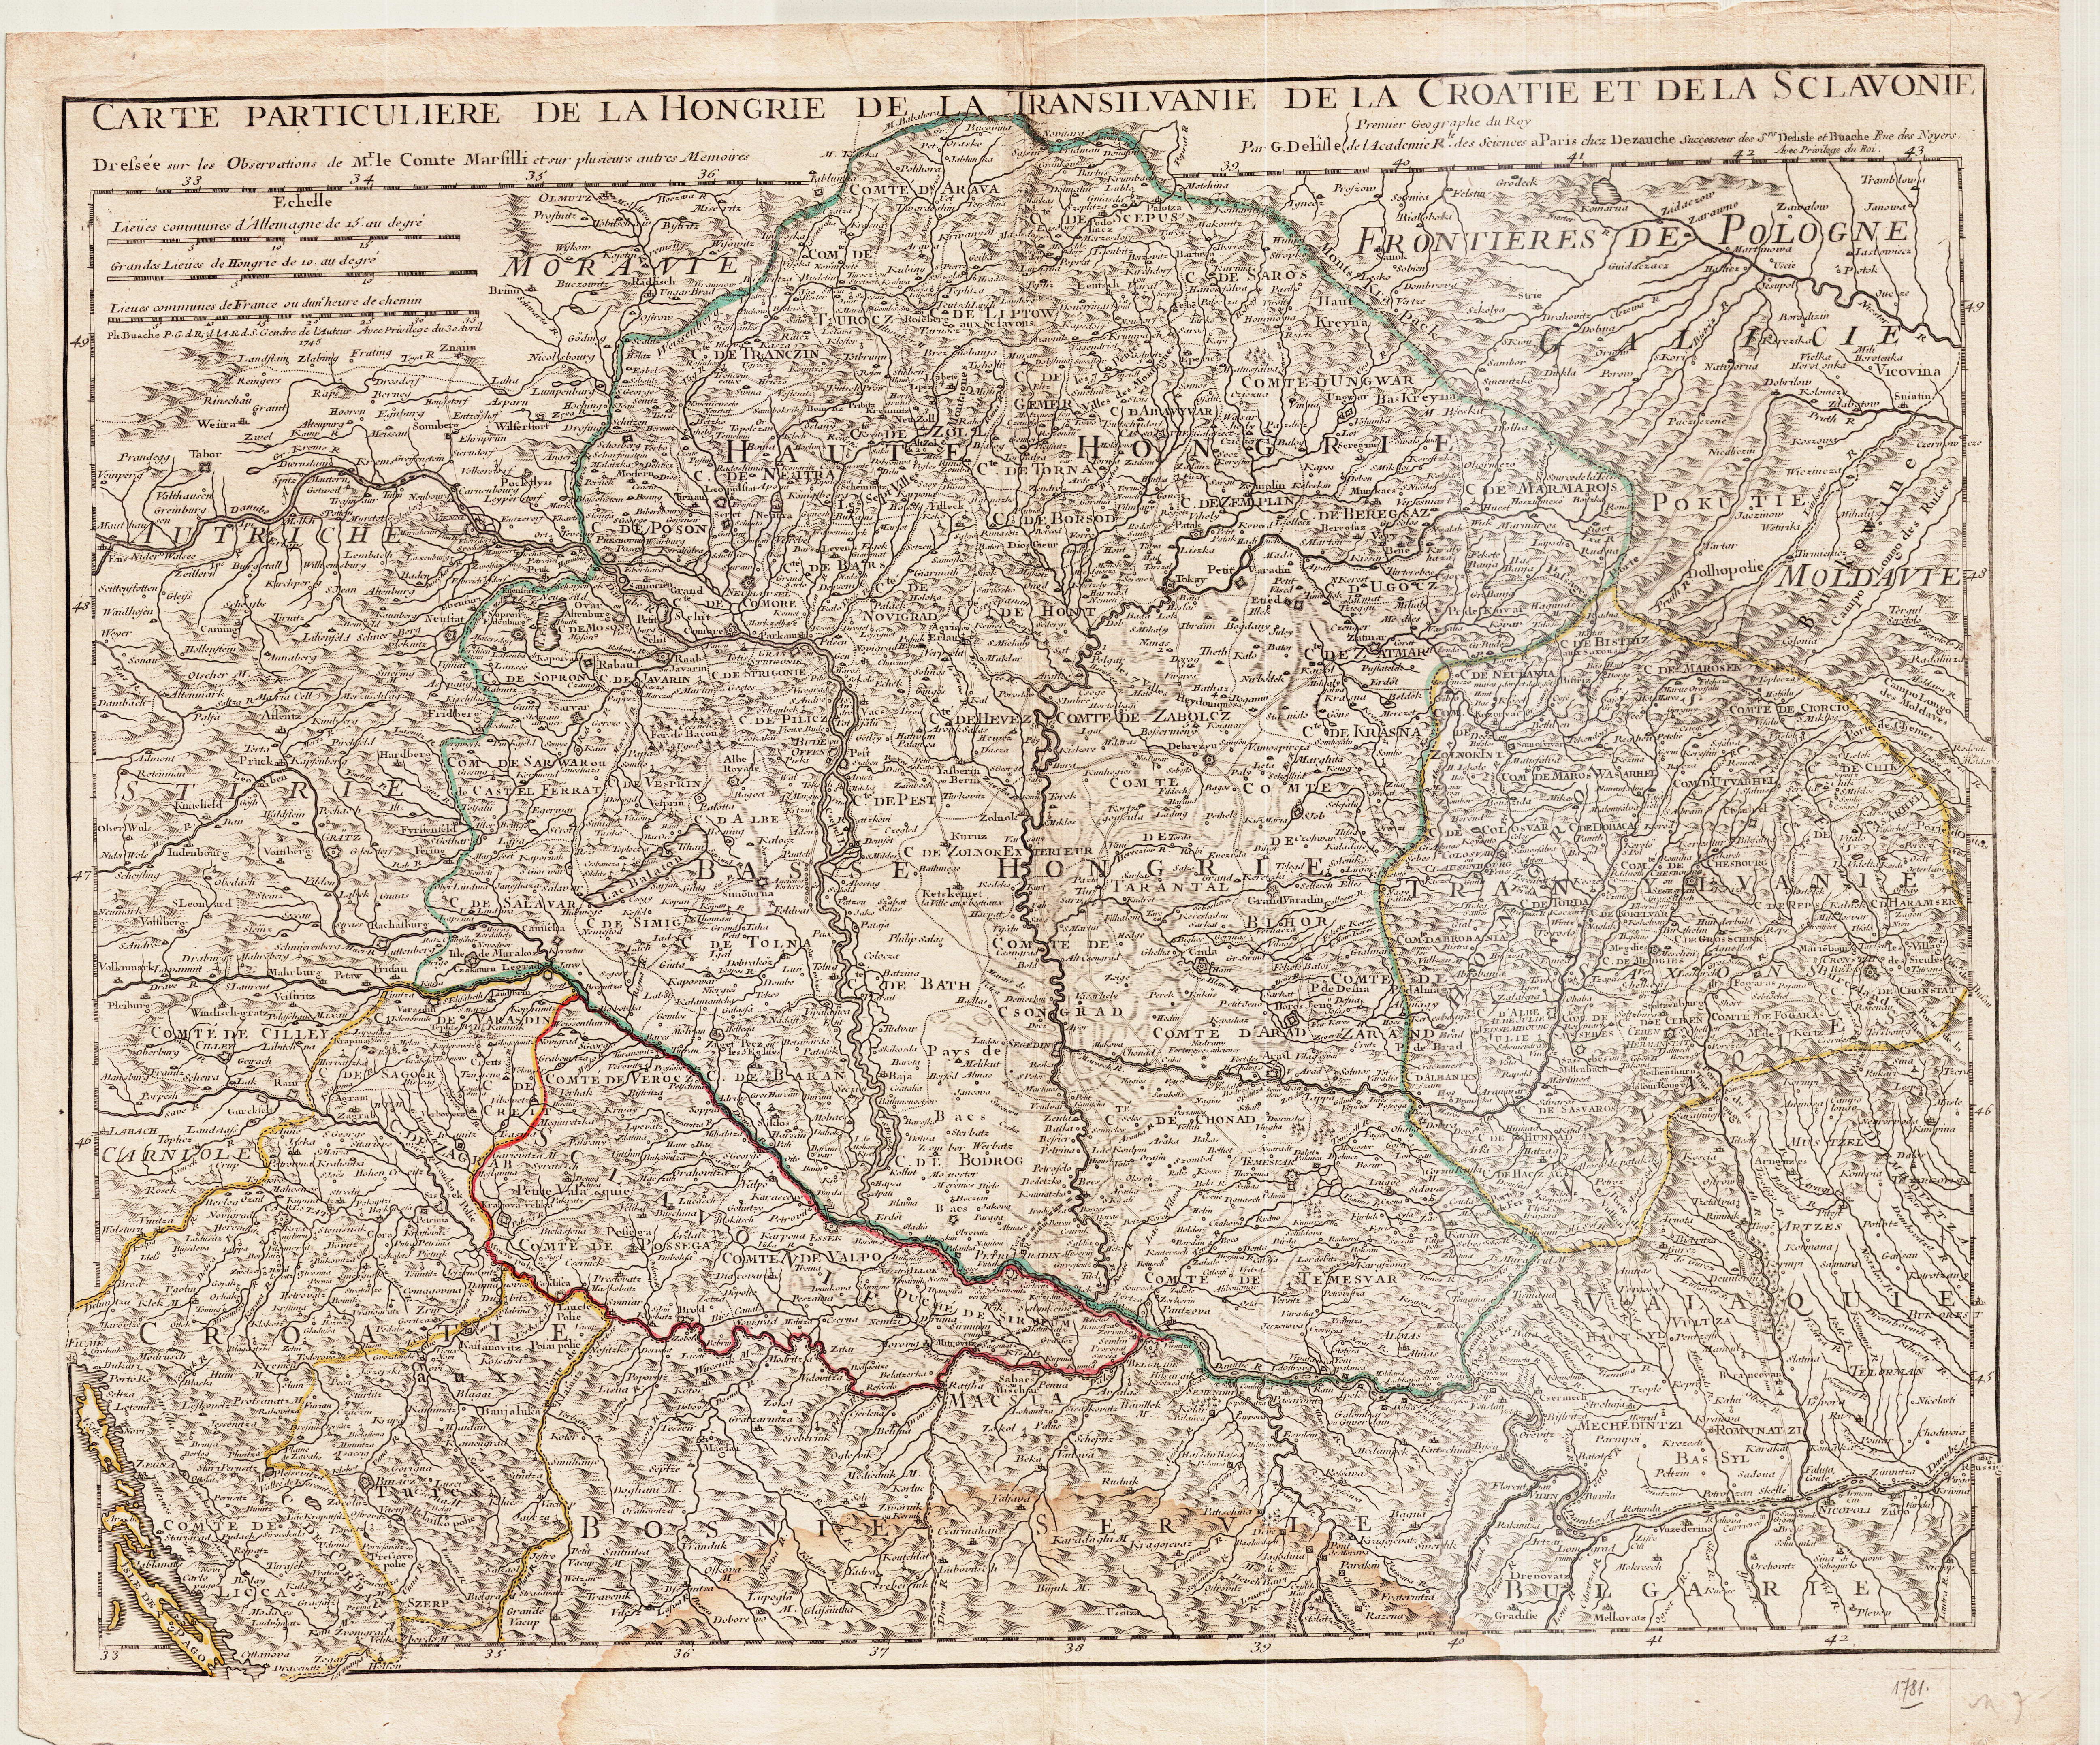 De l’Isle Carte particuliere de la Hongrie de la Transilvanie (Paris, 1781)